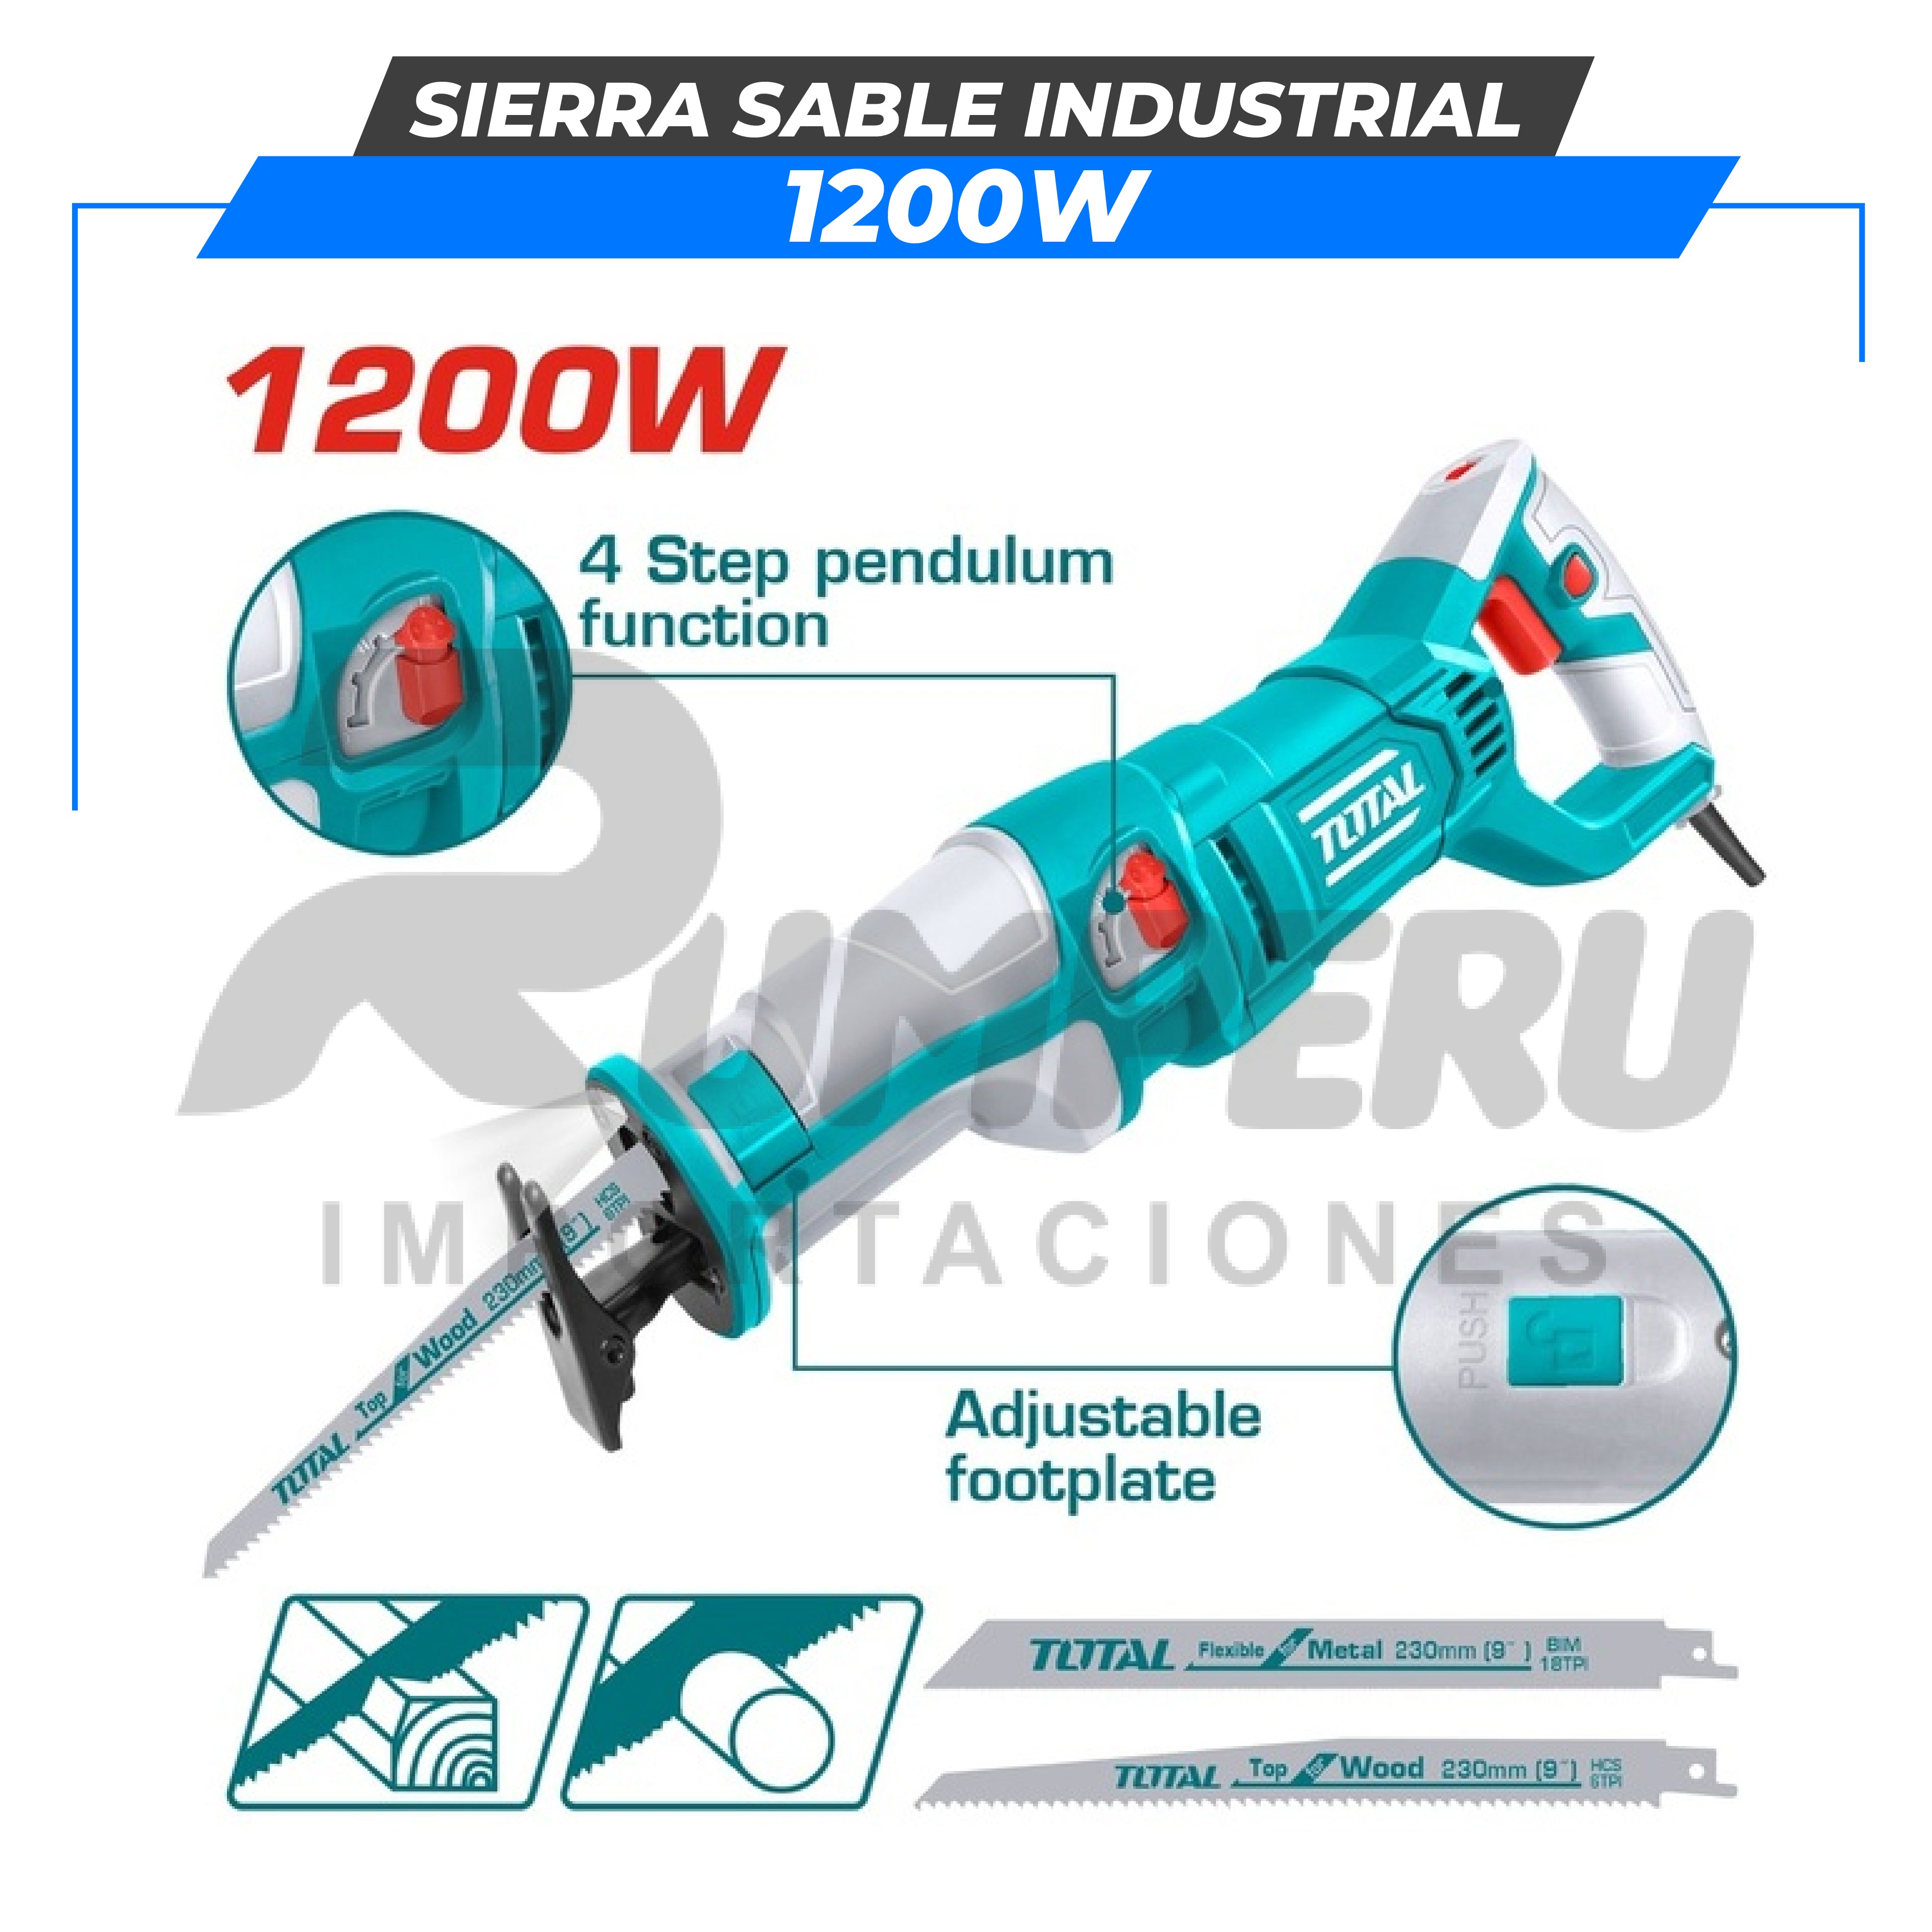 Sierra Sable 1200W INDUSTRIAL